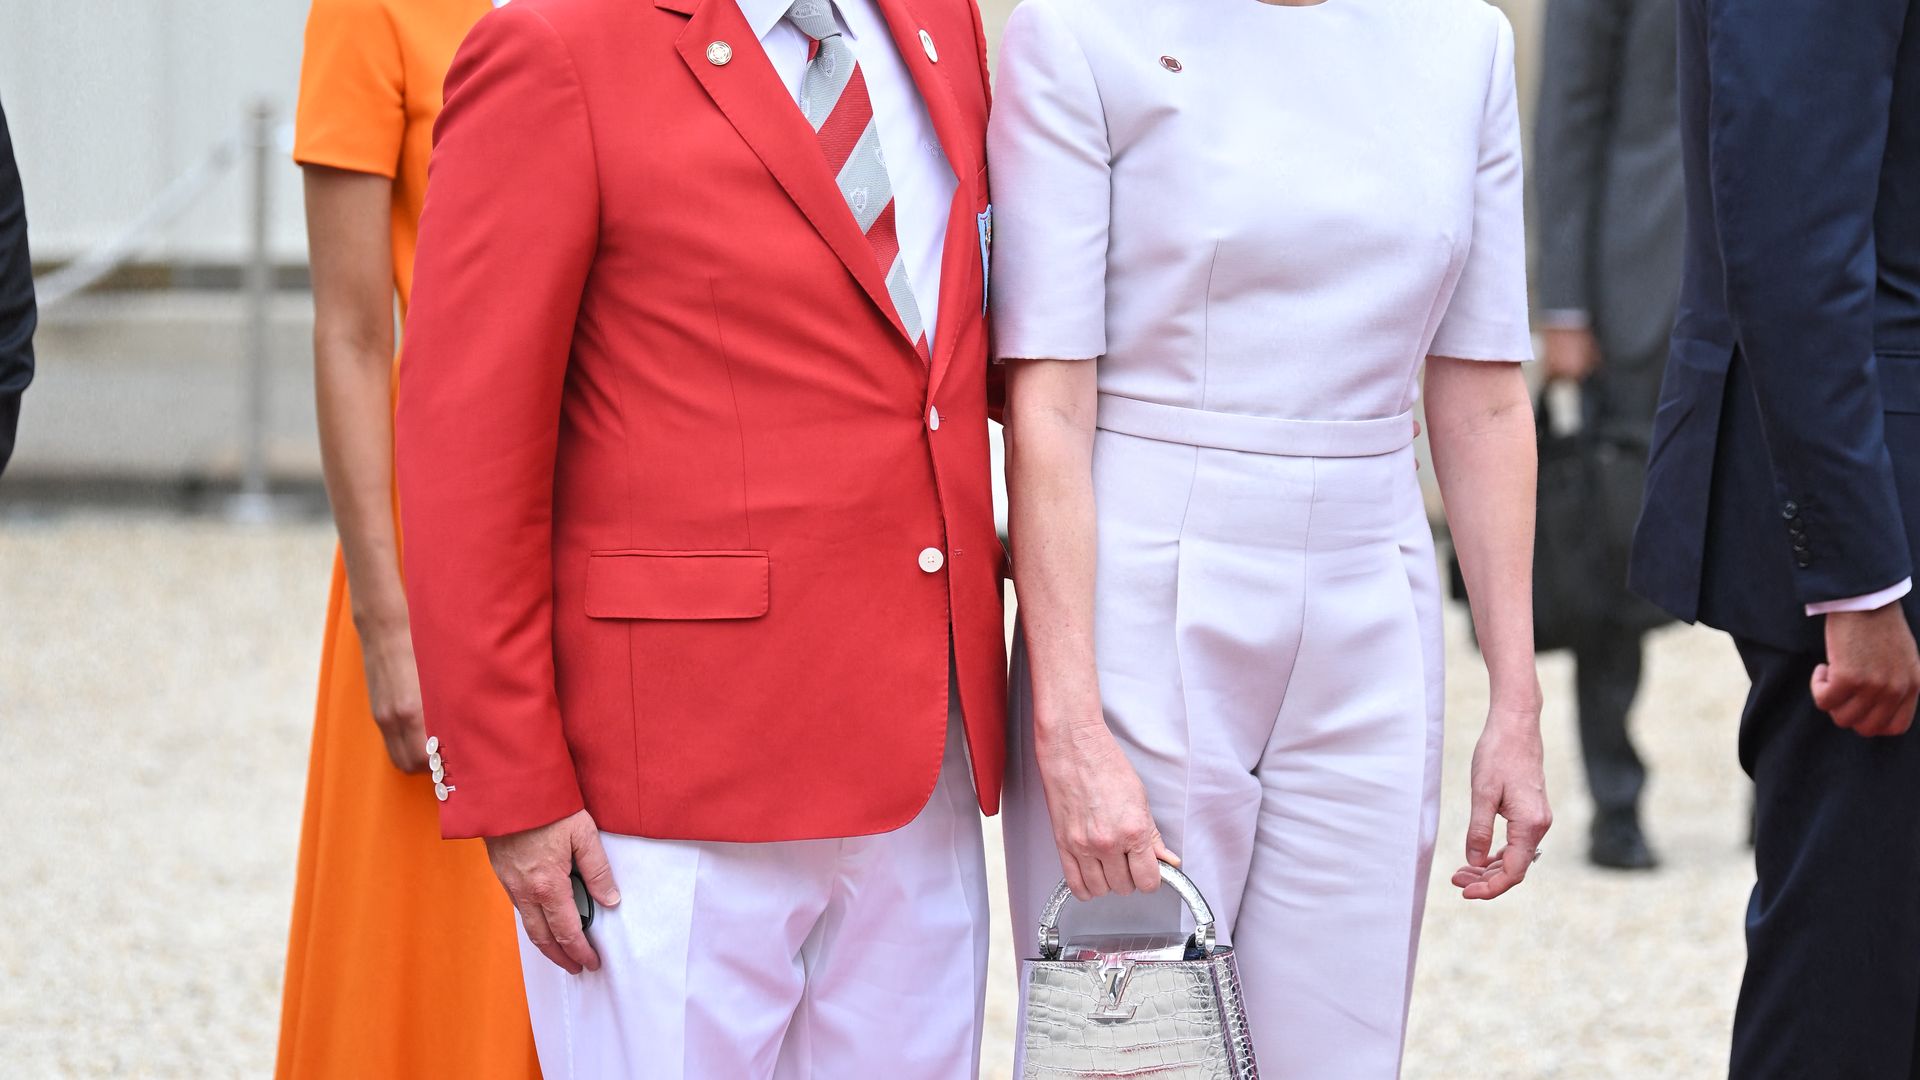 De Charlene de Mónaco a Mary de Dinamarca: así han vestido las 'royals' en su gran cita de París